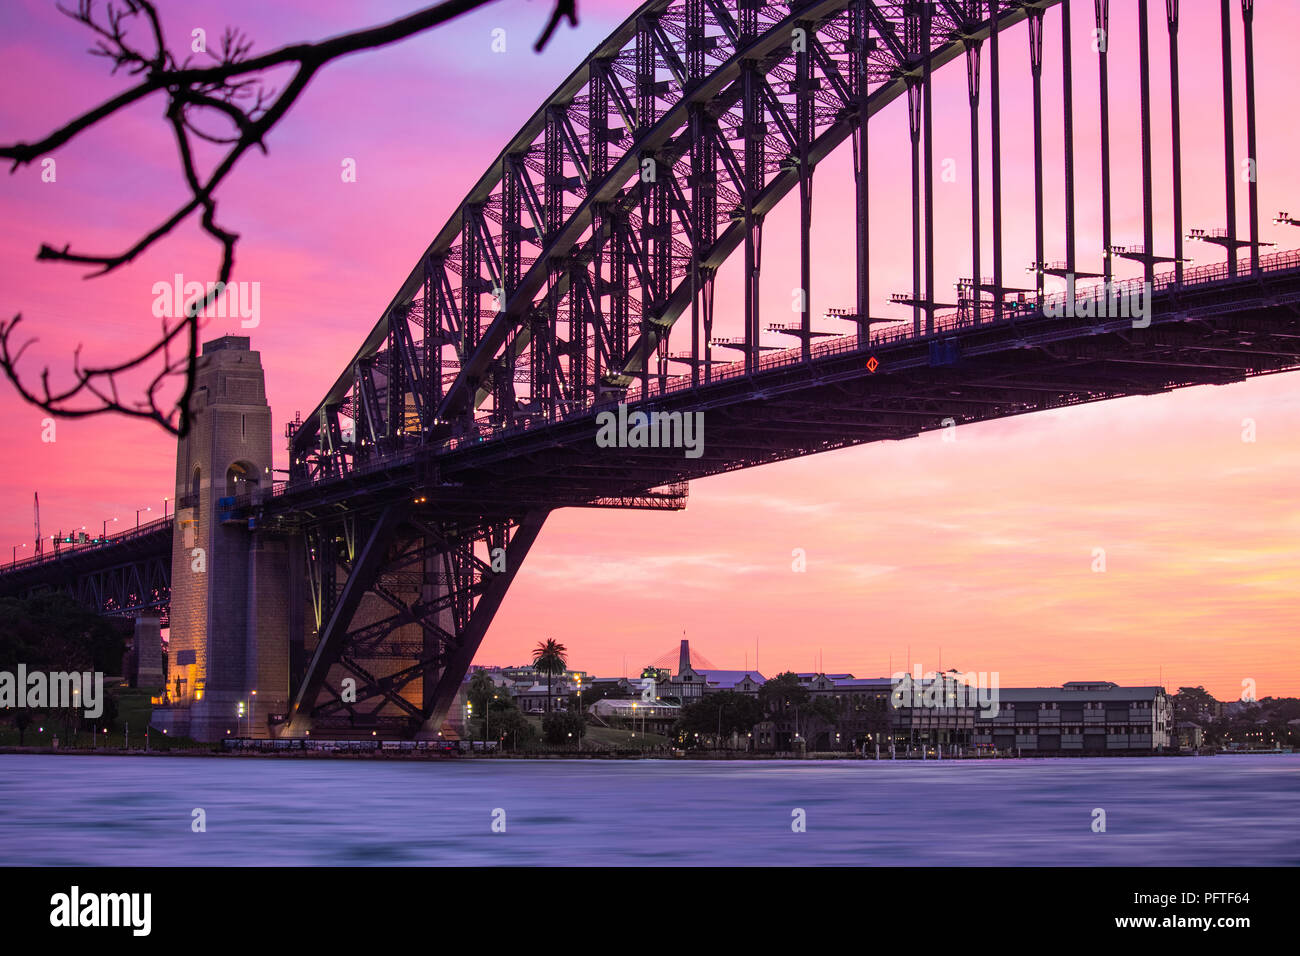 Stunning sunset over the amazing Sydney Harbor Bridge Stock Photo